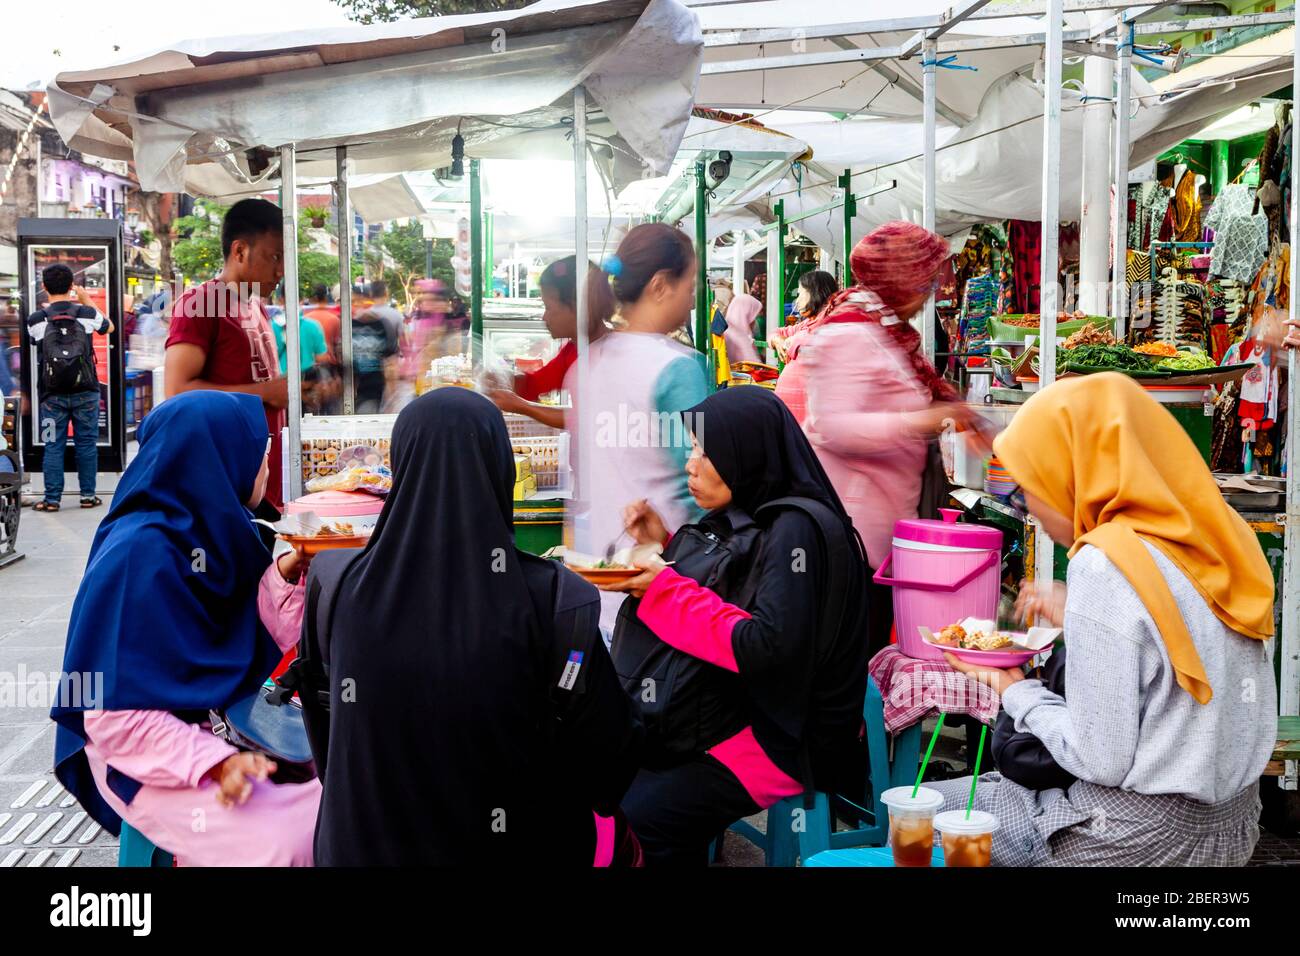 Un groupe de femmes indonésiennes mangeant UN repas dans UNE rue Food Stal, Malioboro Street, Yogyakarta, Indonésie. Banque D'Images